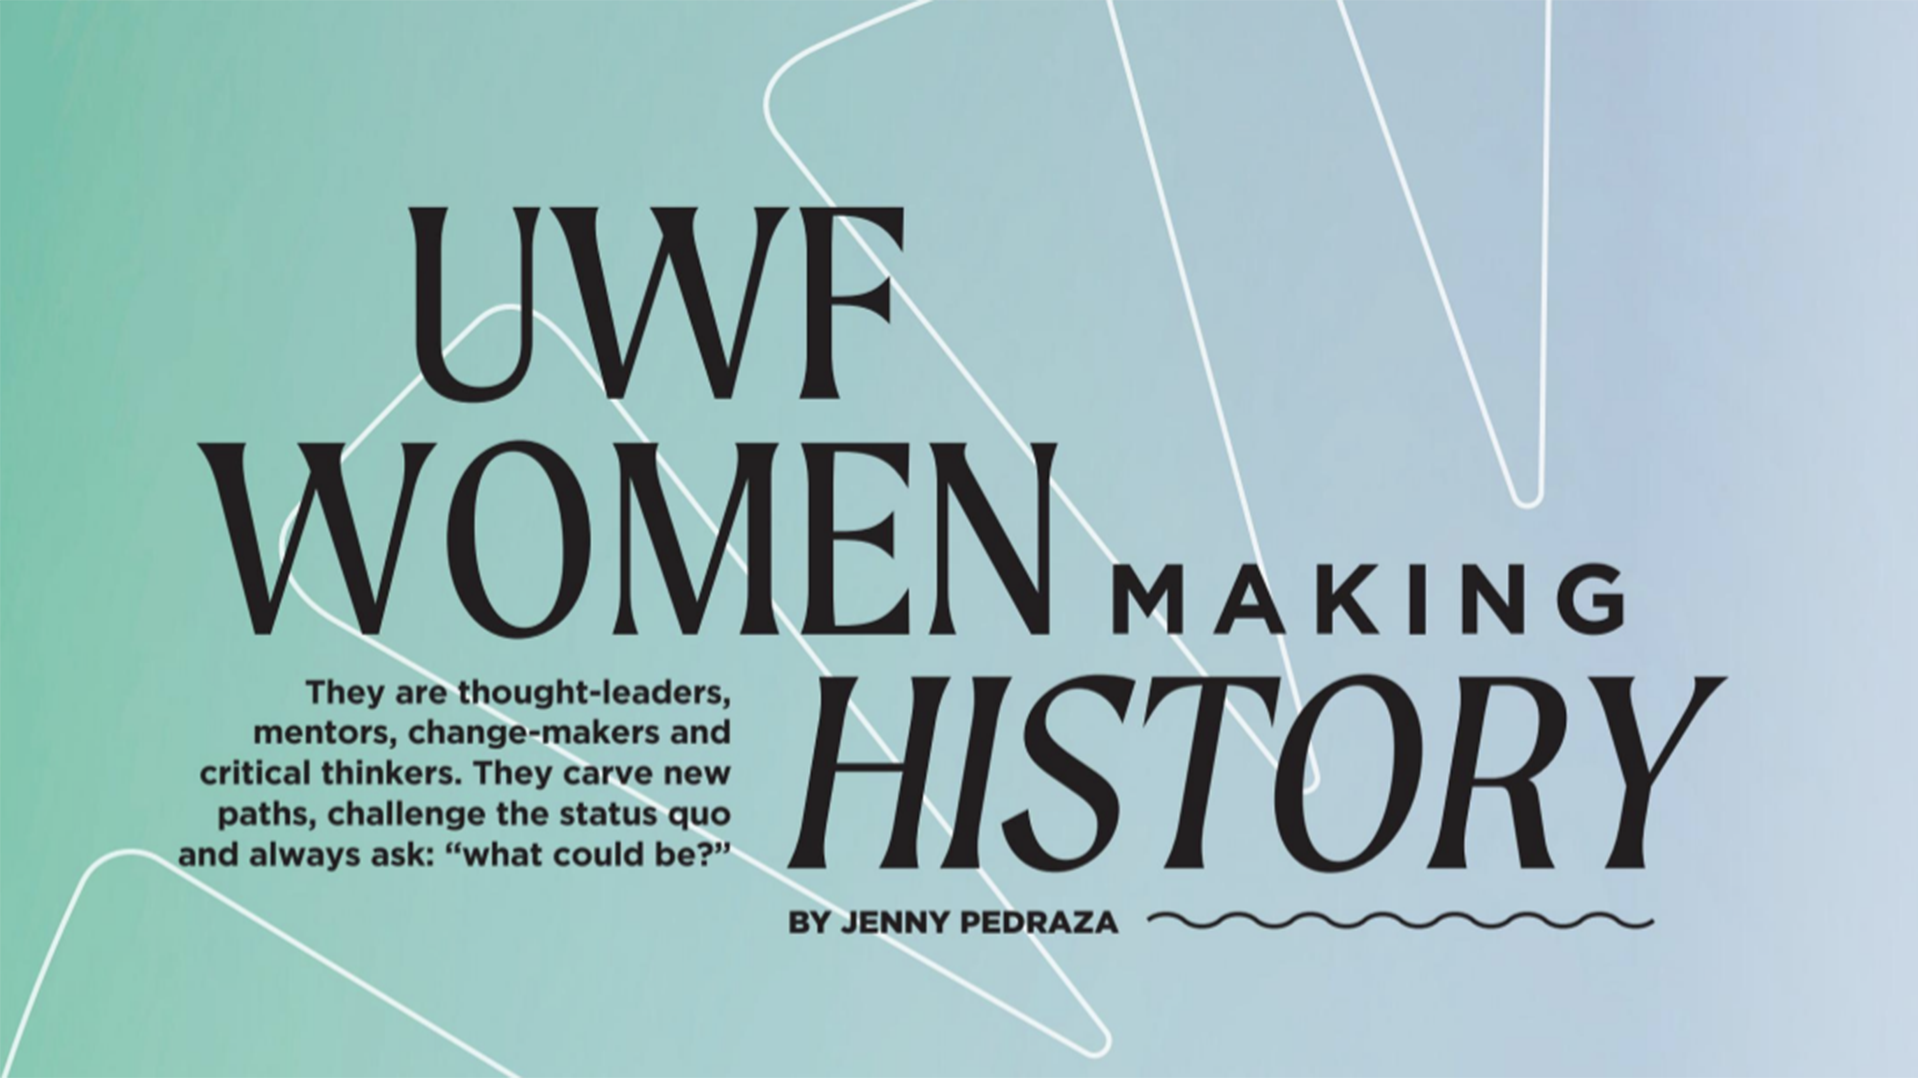 UWF Alumni Magazine: “UWF Women Making History”